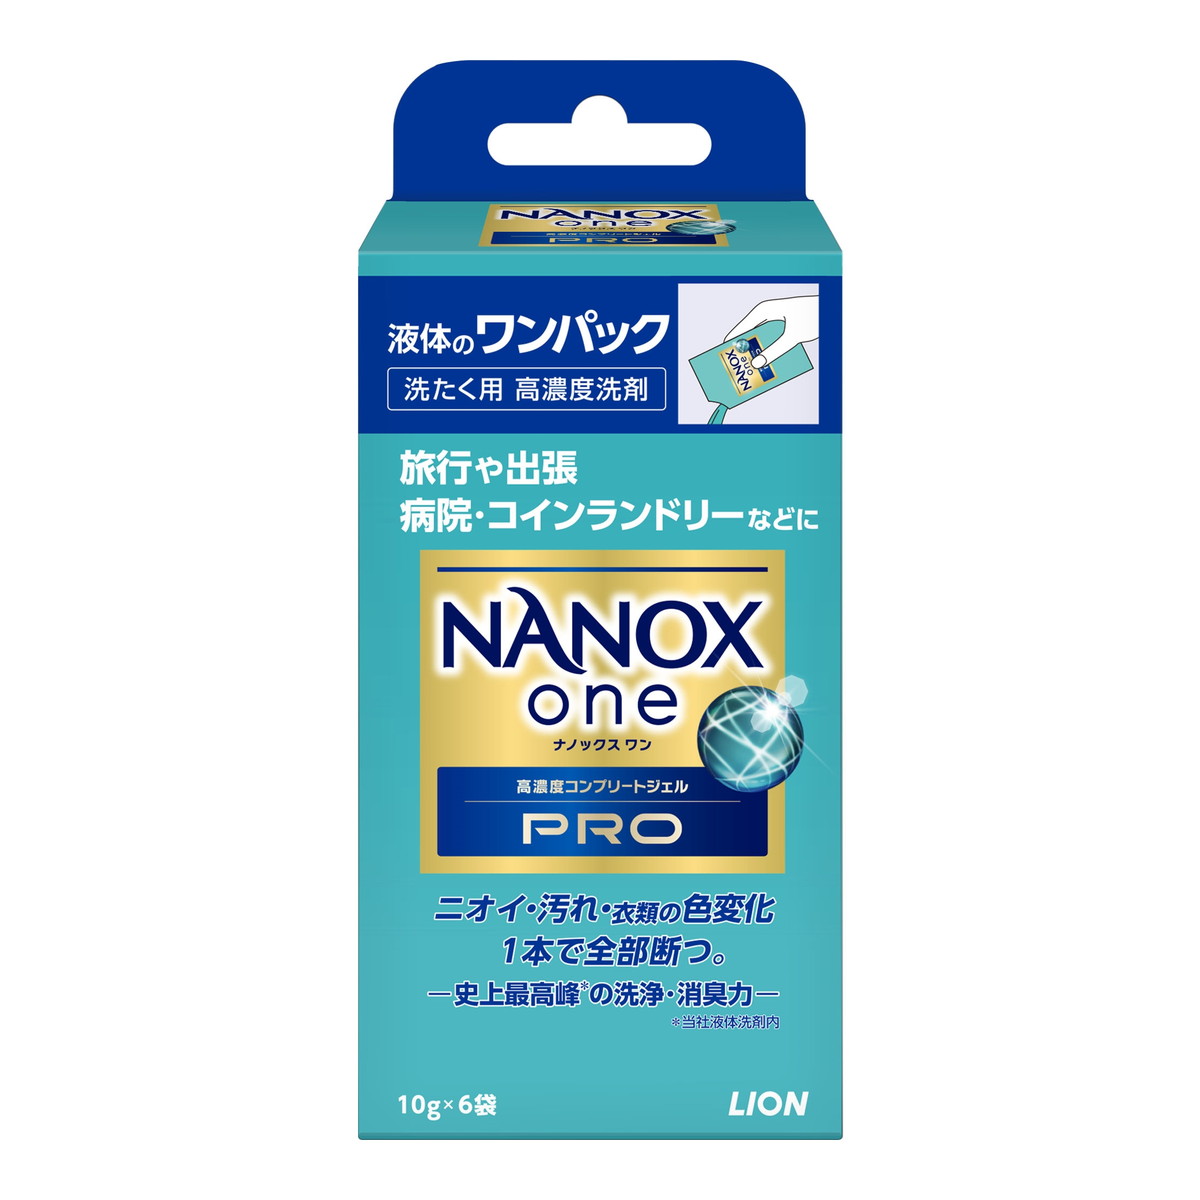 商品名：ライオン NANOX one ナノックス ワン PRO ワンパック 10g×6袋入 洗たく用 高濃度洗剤内容量：10g×6袋JANコード：4903301351092発売元、製造元、輸入元又は販売元：ライオン商品番号：101-c001-4903301351092商品説明ニオイ、汚れ、衣類の色変化（黄ばみ、黒ずみ、色あせ）を1本で全部断つ高濃度コンプリートジェル。洗浄成分・抗菌剤最大量配合で、史上最高峰の洗浄・消臭力を実現。頑固な部屋干し臭、しみこんだ汗臭、時間がたった食べこぼし、蓄積した黄ばみまで解決！それだけでなく、使い続けると白いシャツは黄ばみや黒ずみが発生しにくく、黒色衣類の色あせも防ぎます。ダメージケア、徹底抗菌、ウイルス除去、洗濯槽のニオイ抑制機能搭載広告文責：アットライフ株式会社TEL 050-3196-1510 ※商品パッケージは変更の場合あり。メーカー欠品または完売の際、キャンセルをお願いすることがあります。ご了承ください。